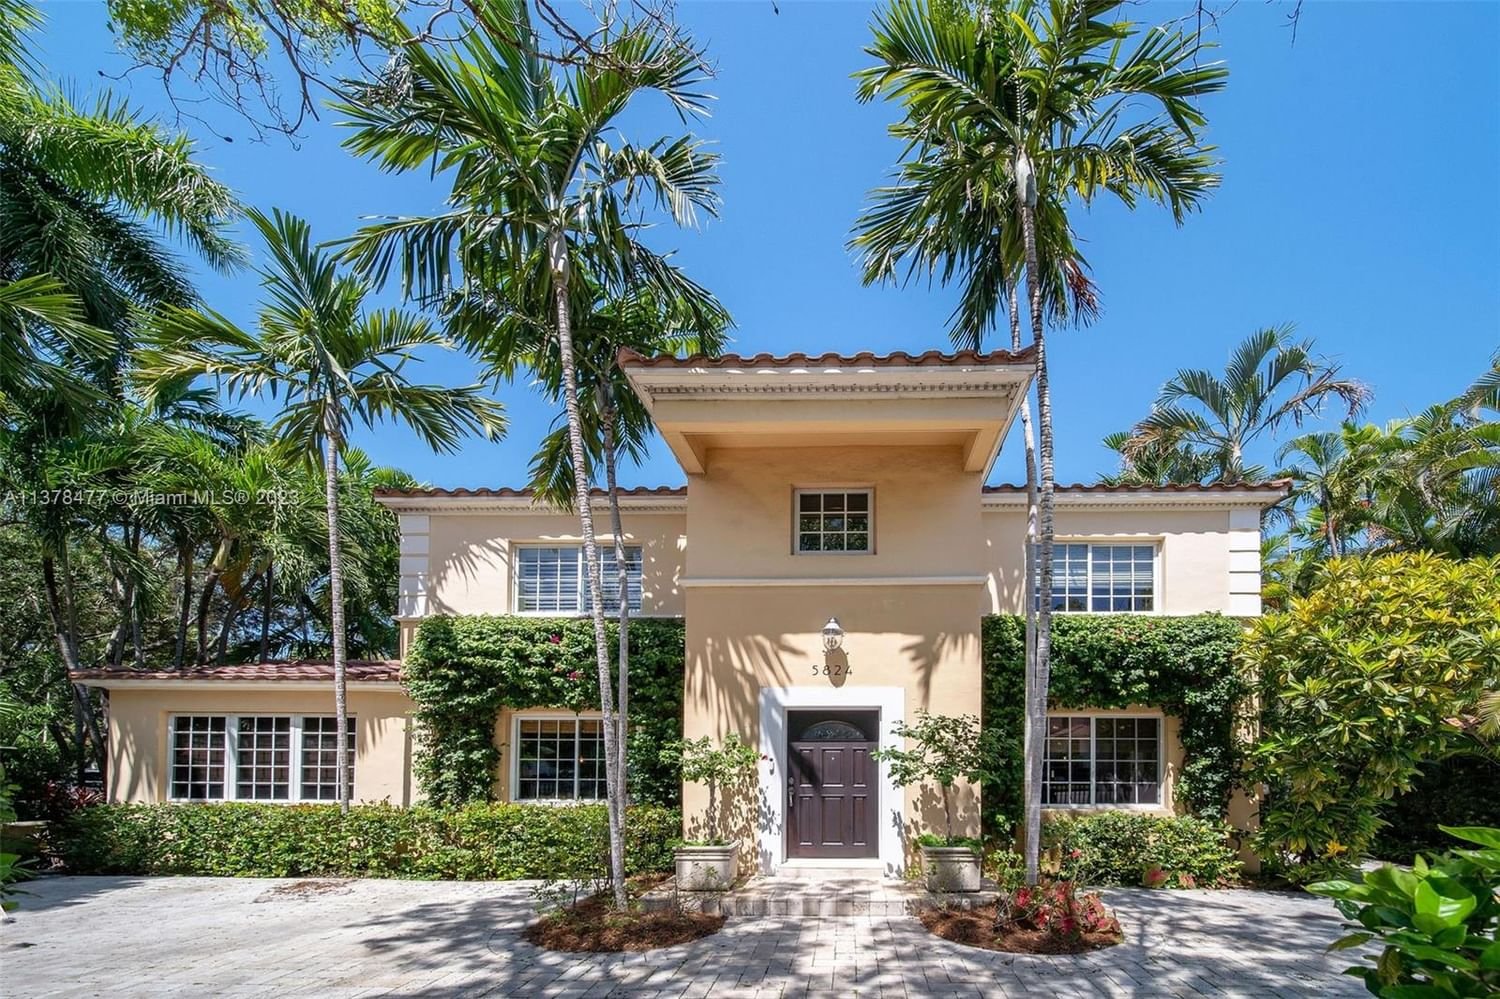 Real estate property located at 5824 Alton Rd, Miami-Dade County, Miami Beach, FL